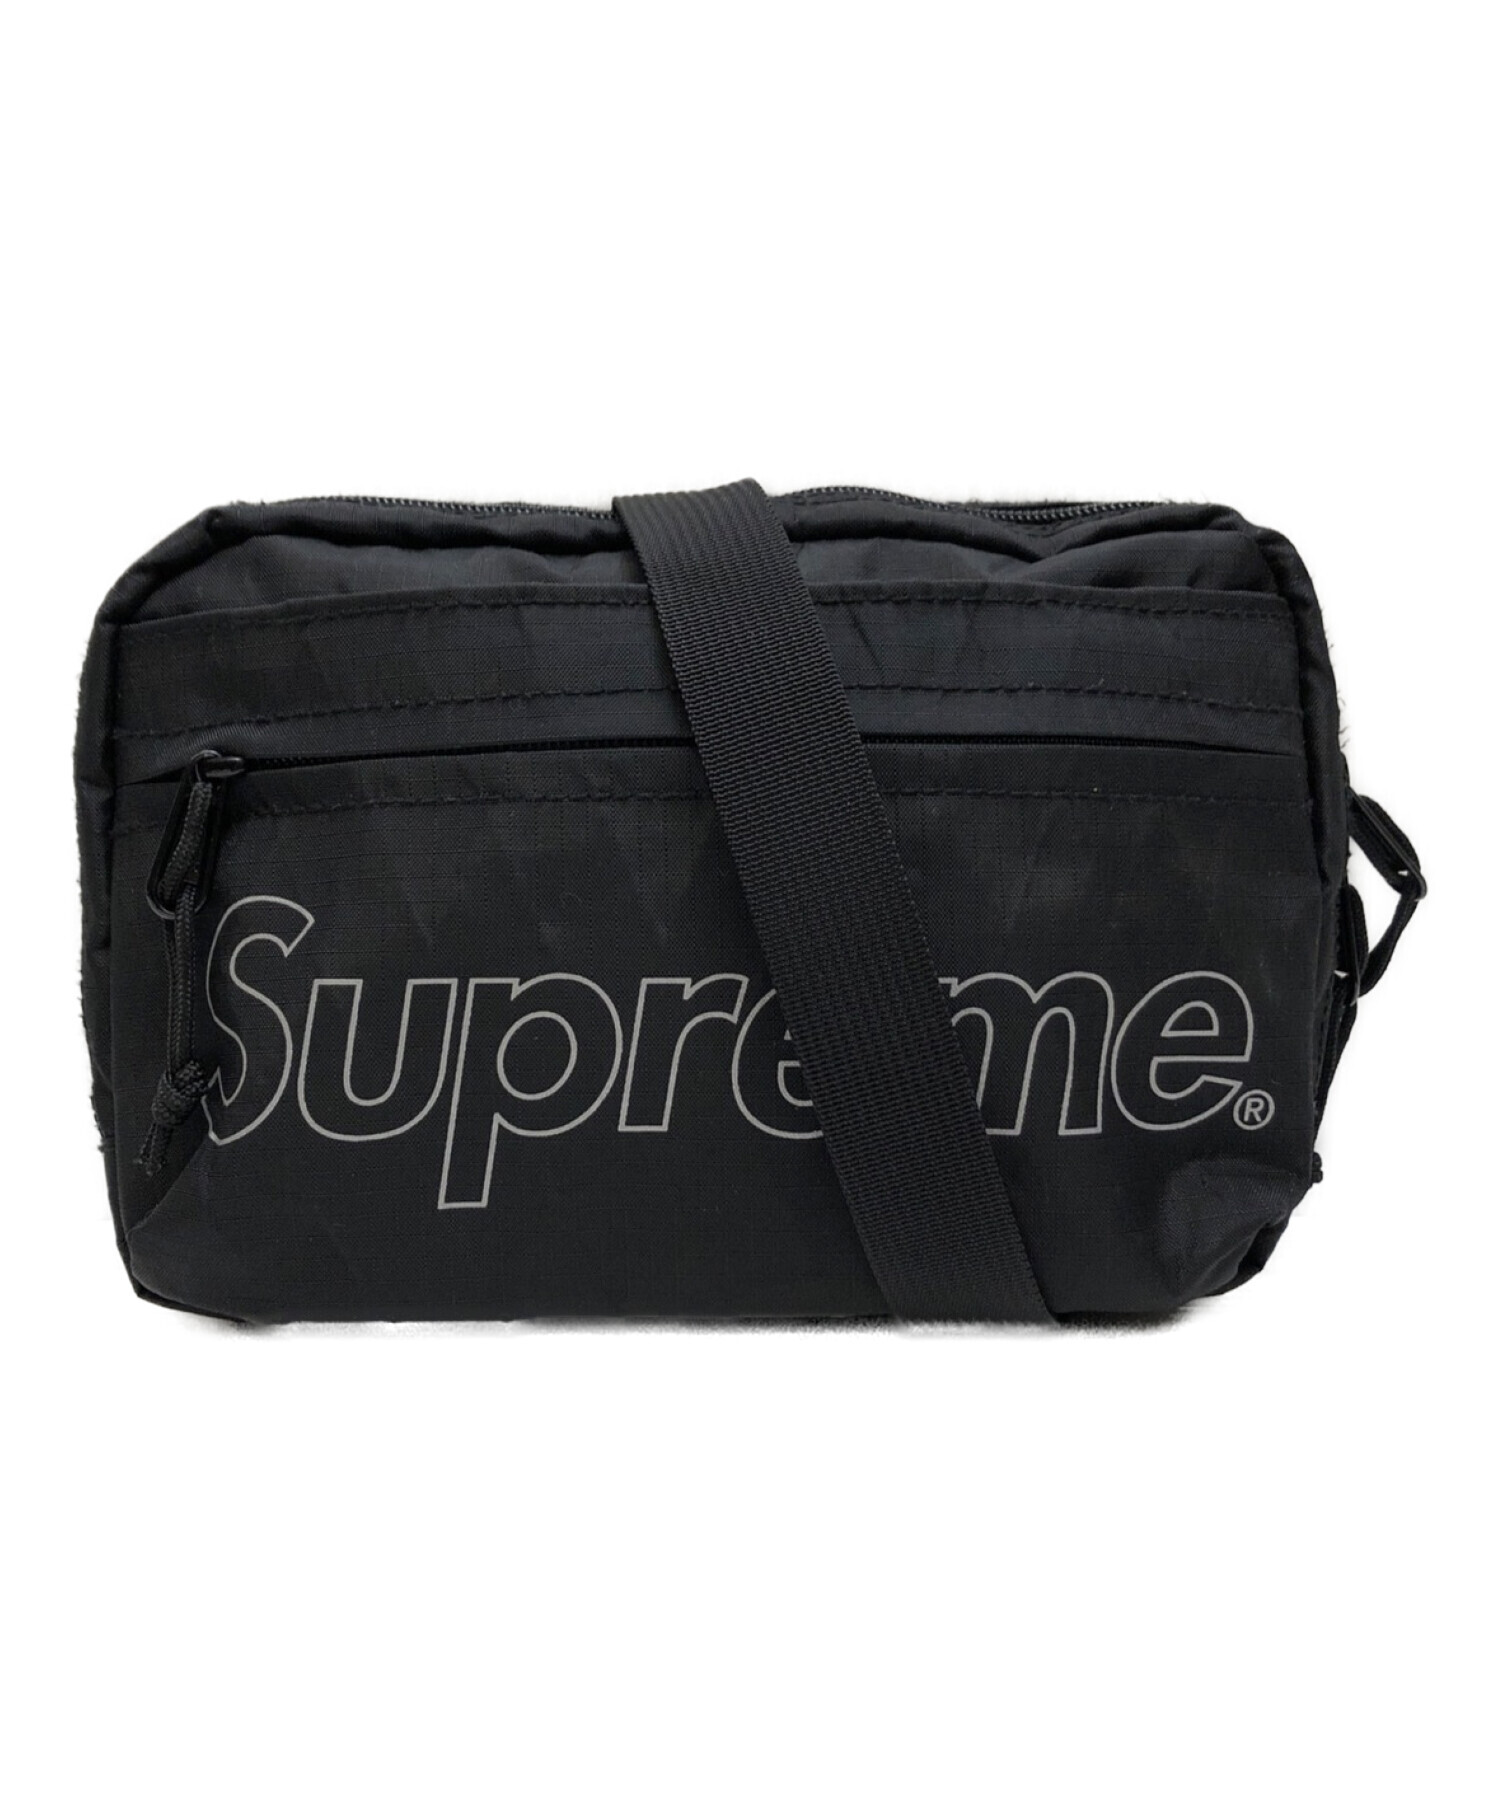 supreme 18aw shoulder bag ショルダーバッグメンズ